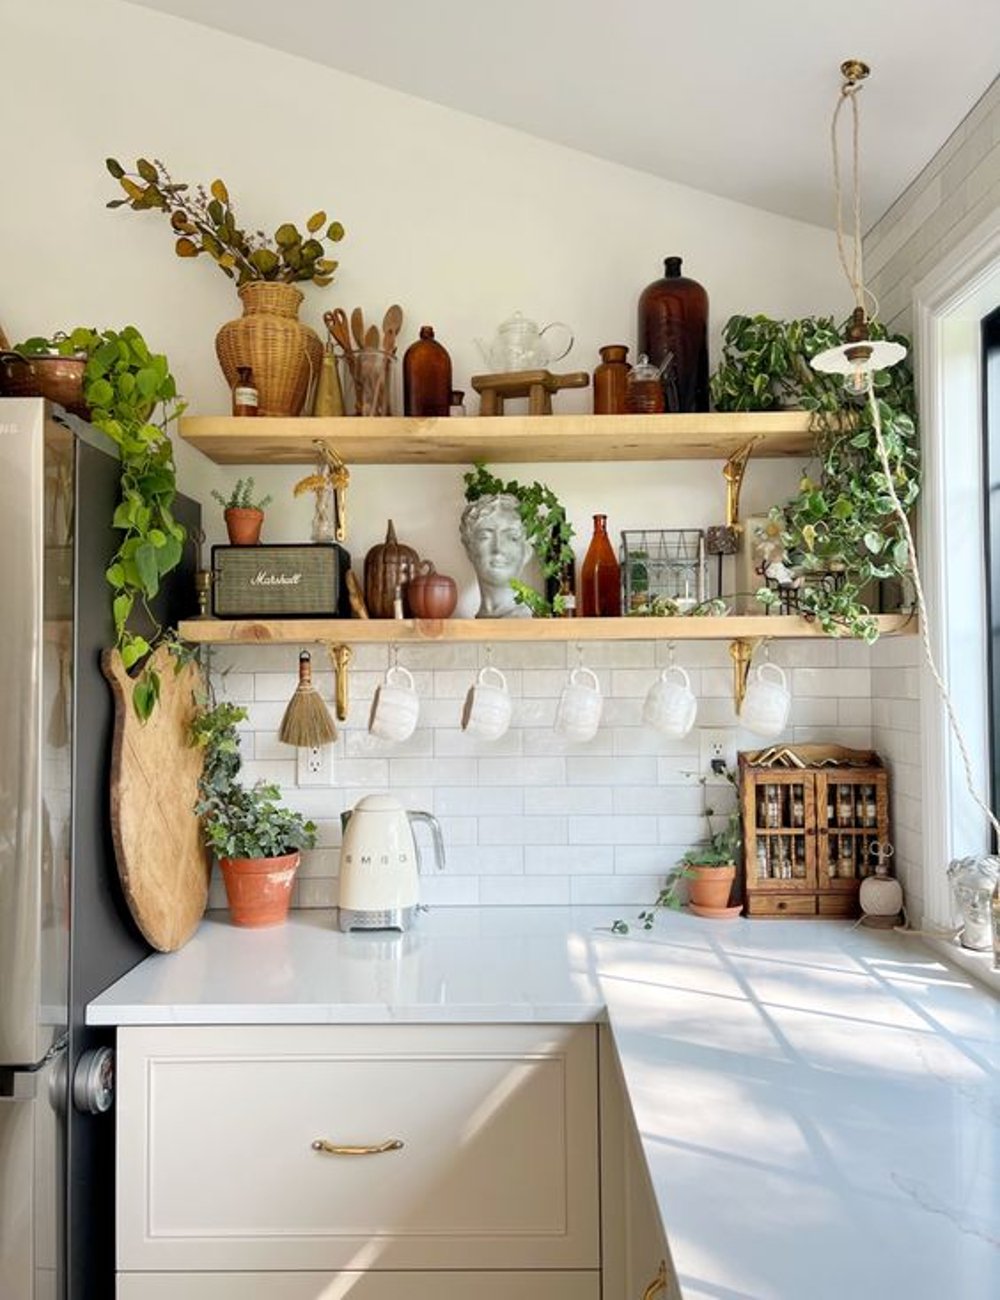 Cozinha decorada - xícaras  - prateleira na cozinha - decor - casa - https://stealthelook.com.br